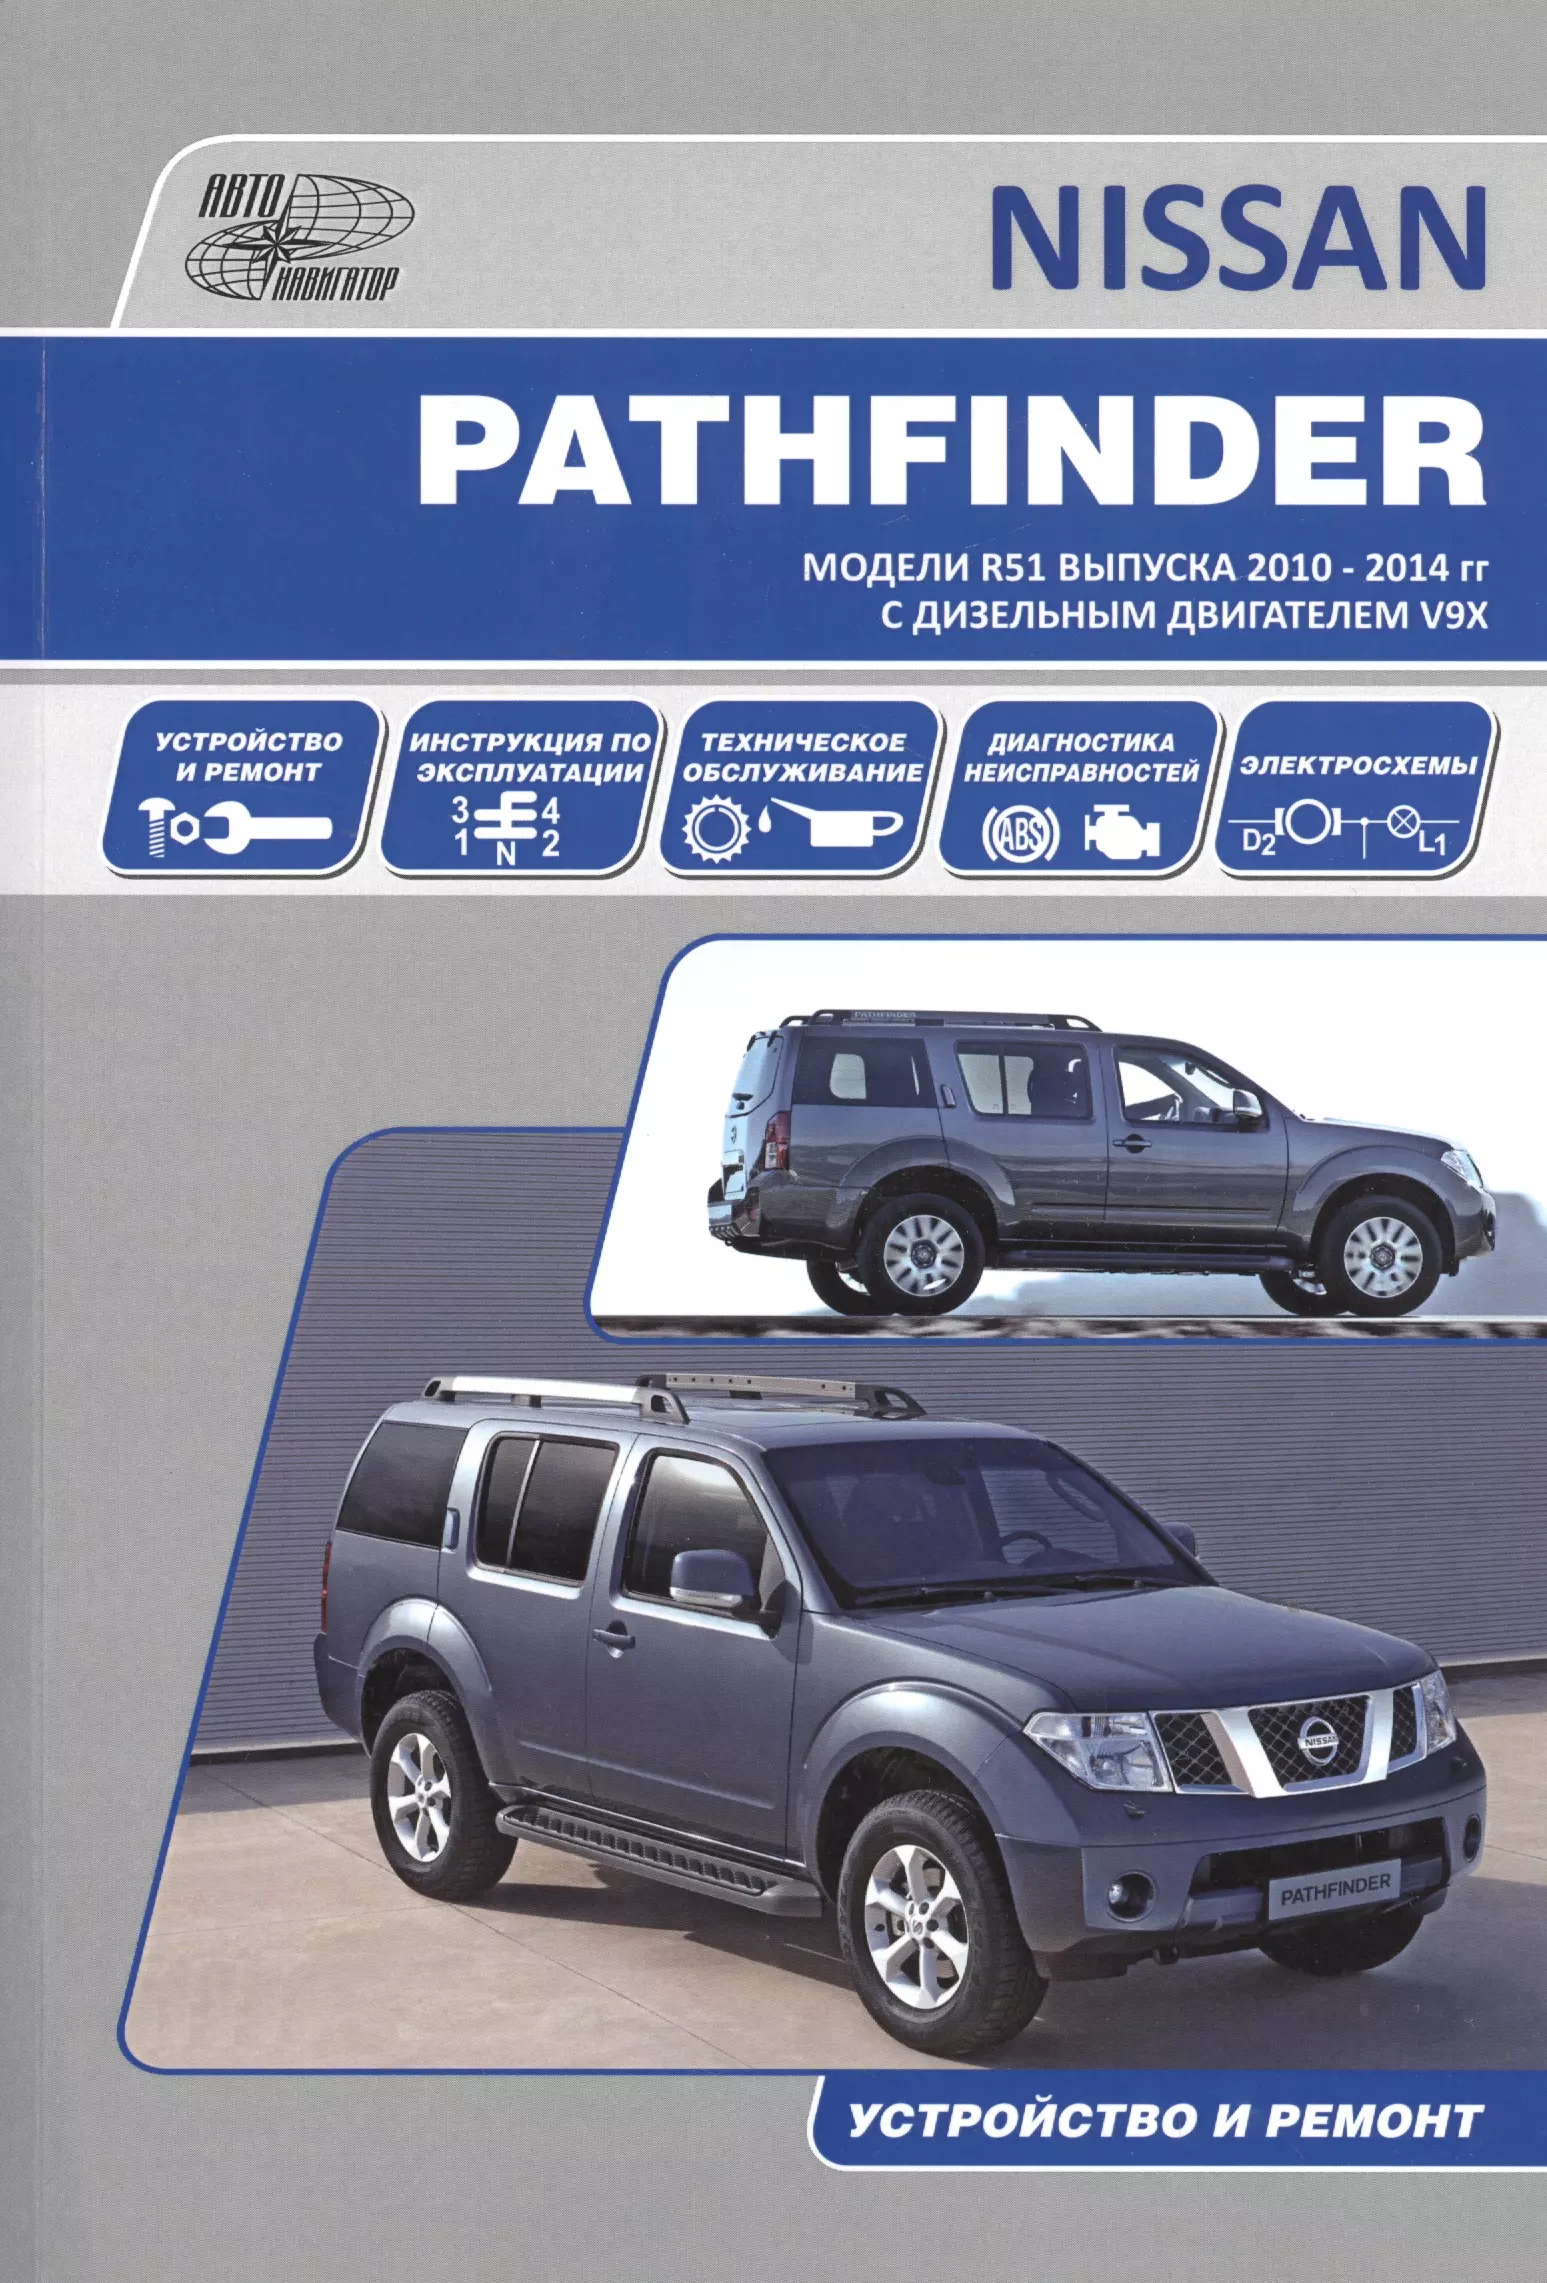 Nissan Pathfinder. Модели R51 выпуска 2010-2014 гг. с дизельным двигателем V9X. Руководство по эксплуатации, устройство, техническое обслуживание, ремонт для нового автомобильного рулевого механизма nissan navara d40 pathfinder r51 49001 3x12a 49001 jr810 492003x11a 490013x13a 490013x